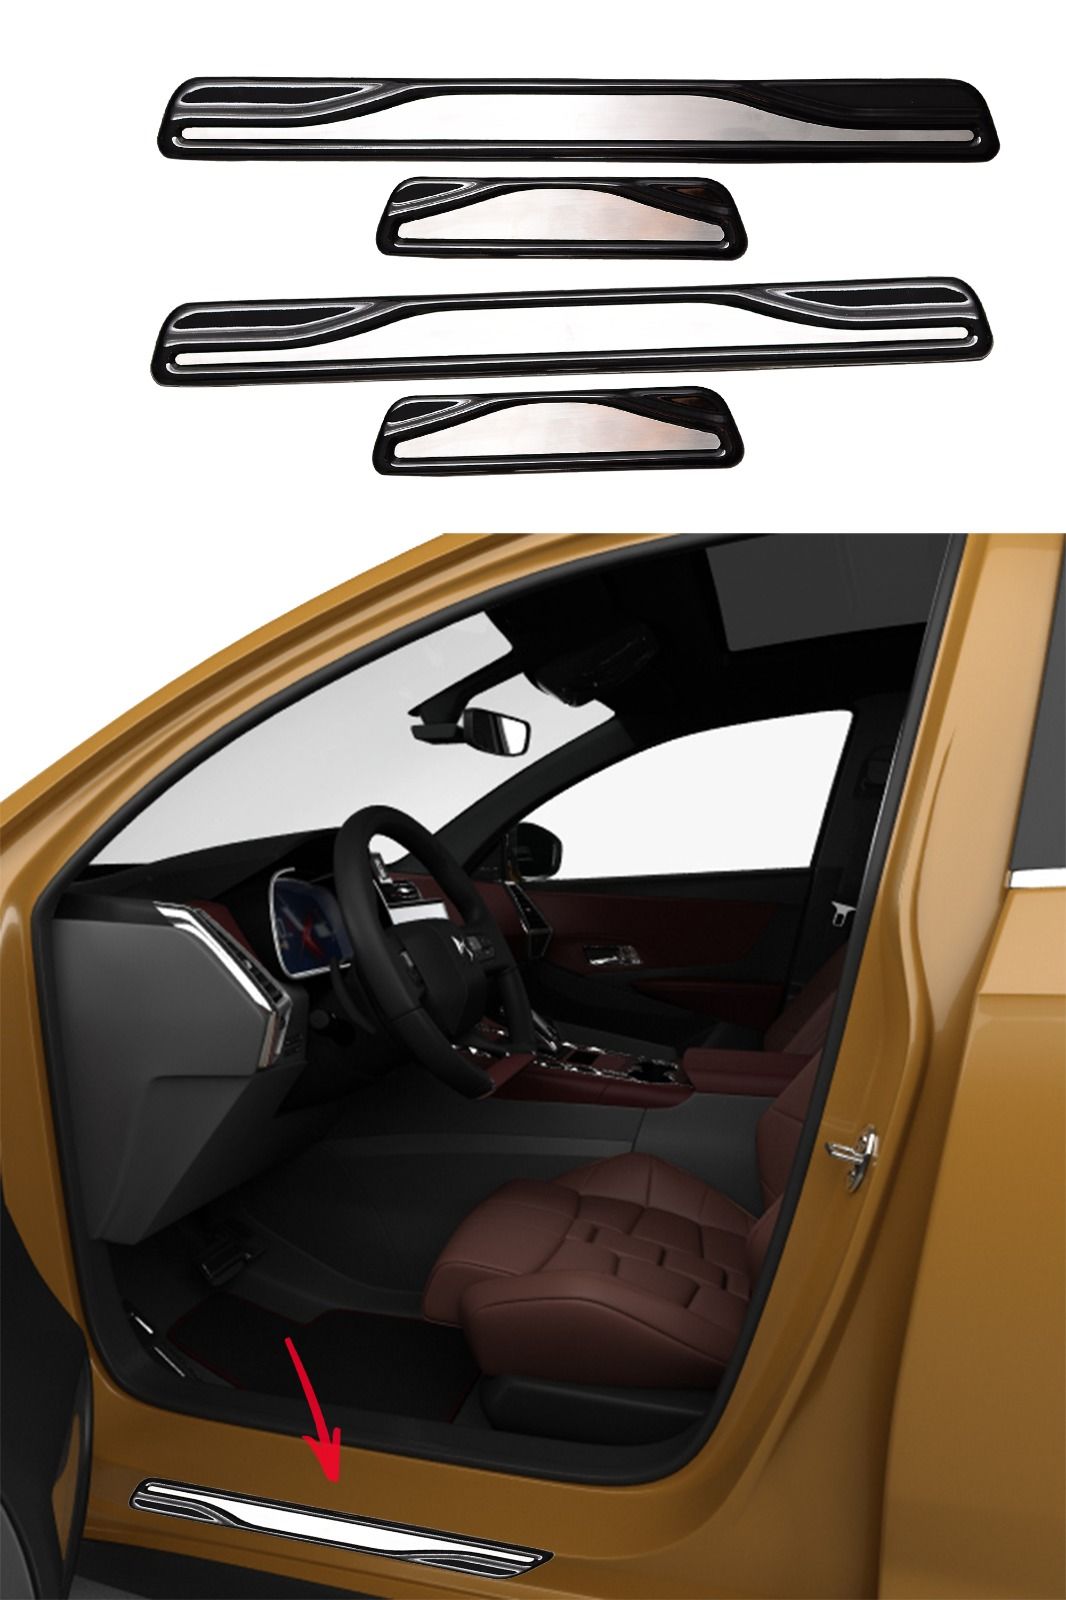 Seat Leon Mk3 Cupra Krom Kapı Eşik Koruması 2017 Ve Üzeri 4 Parça